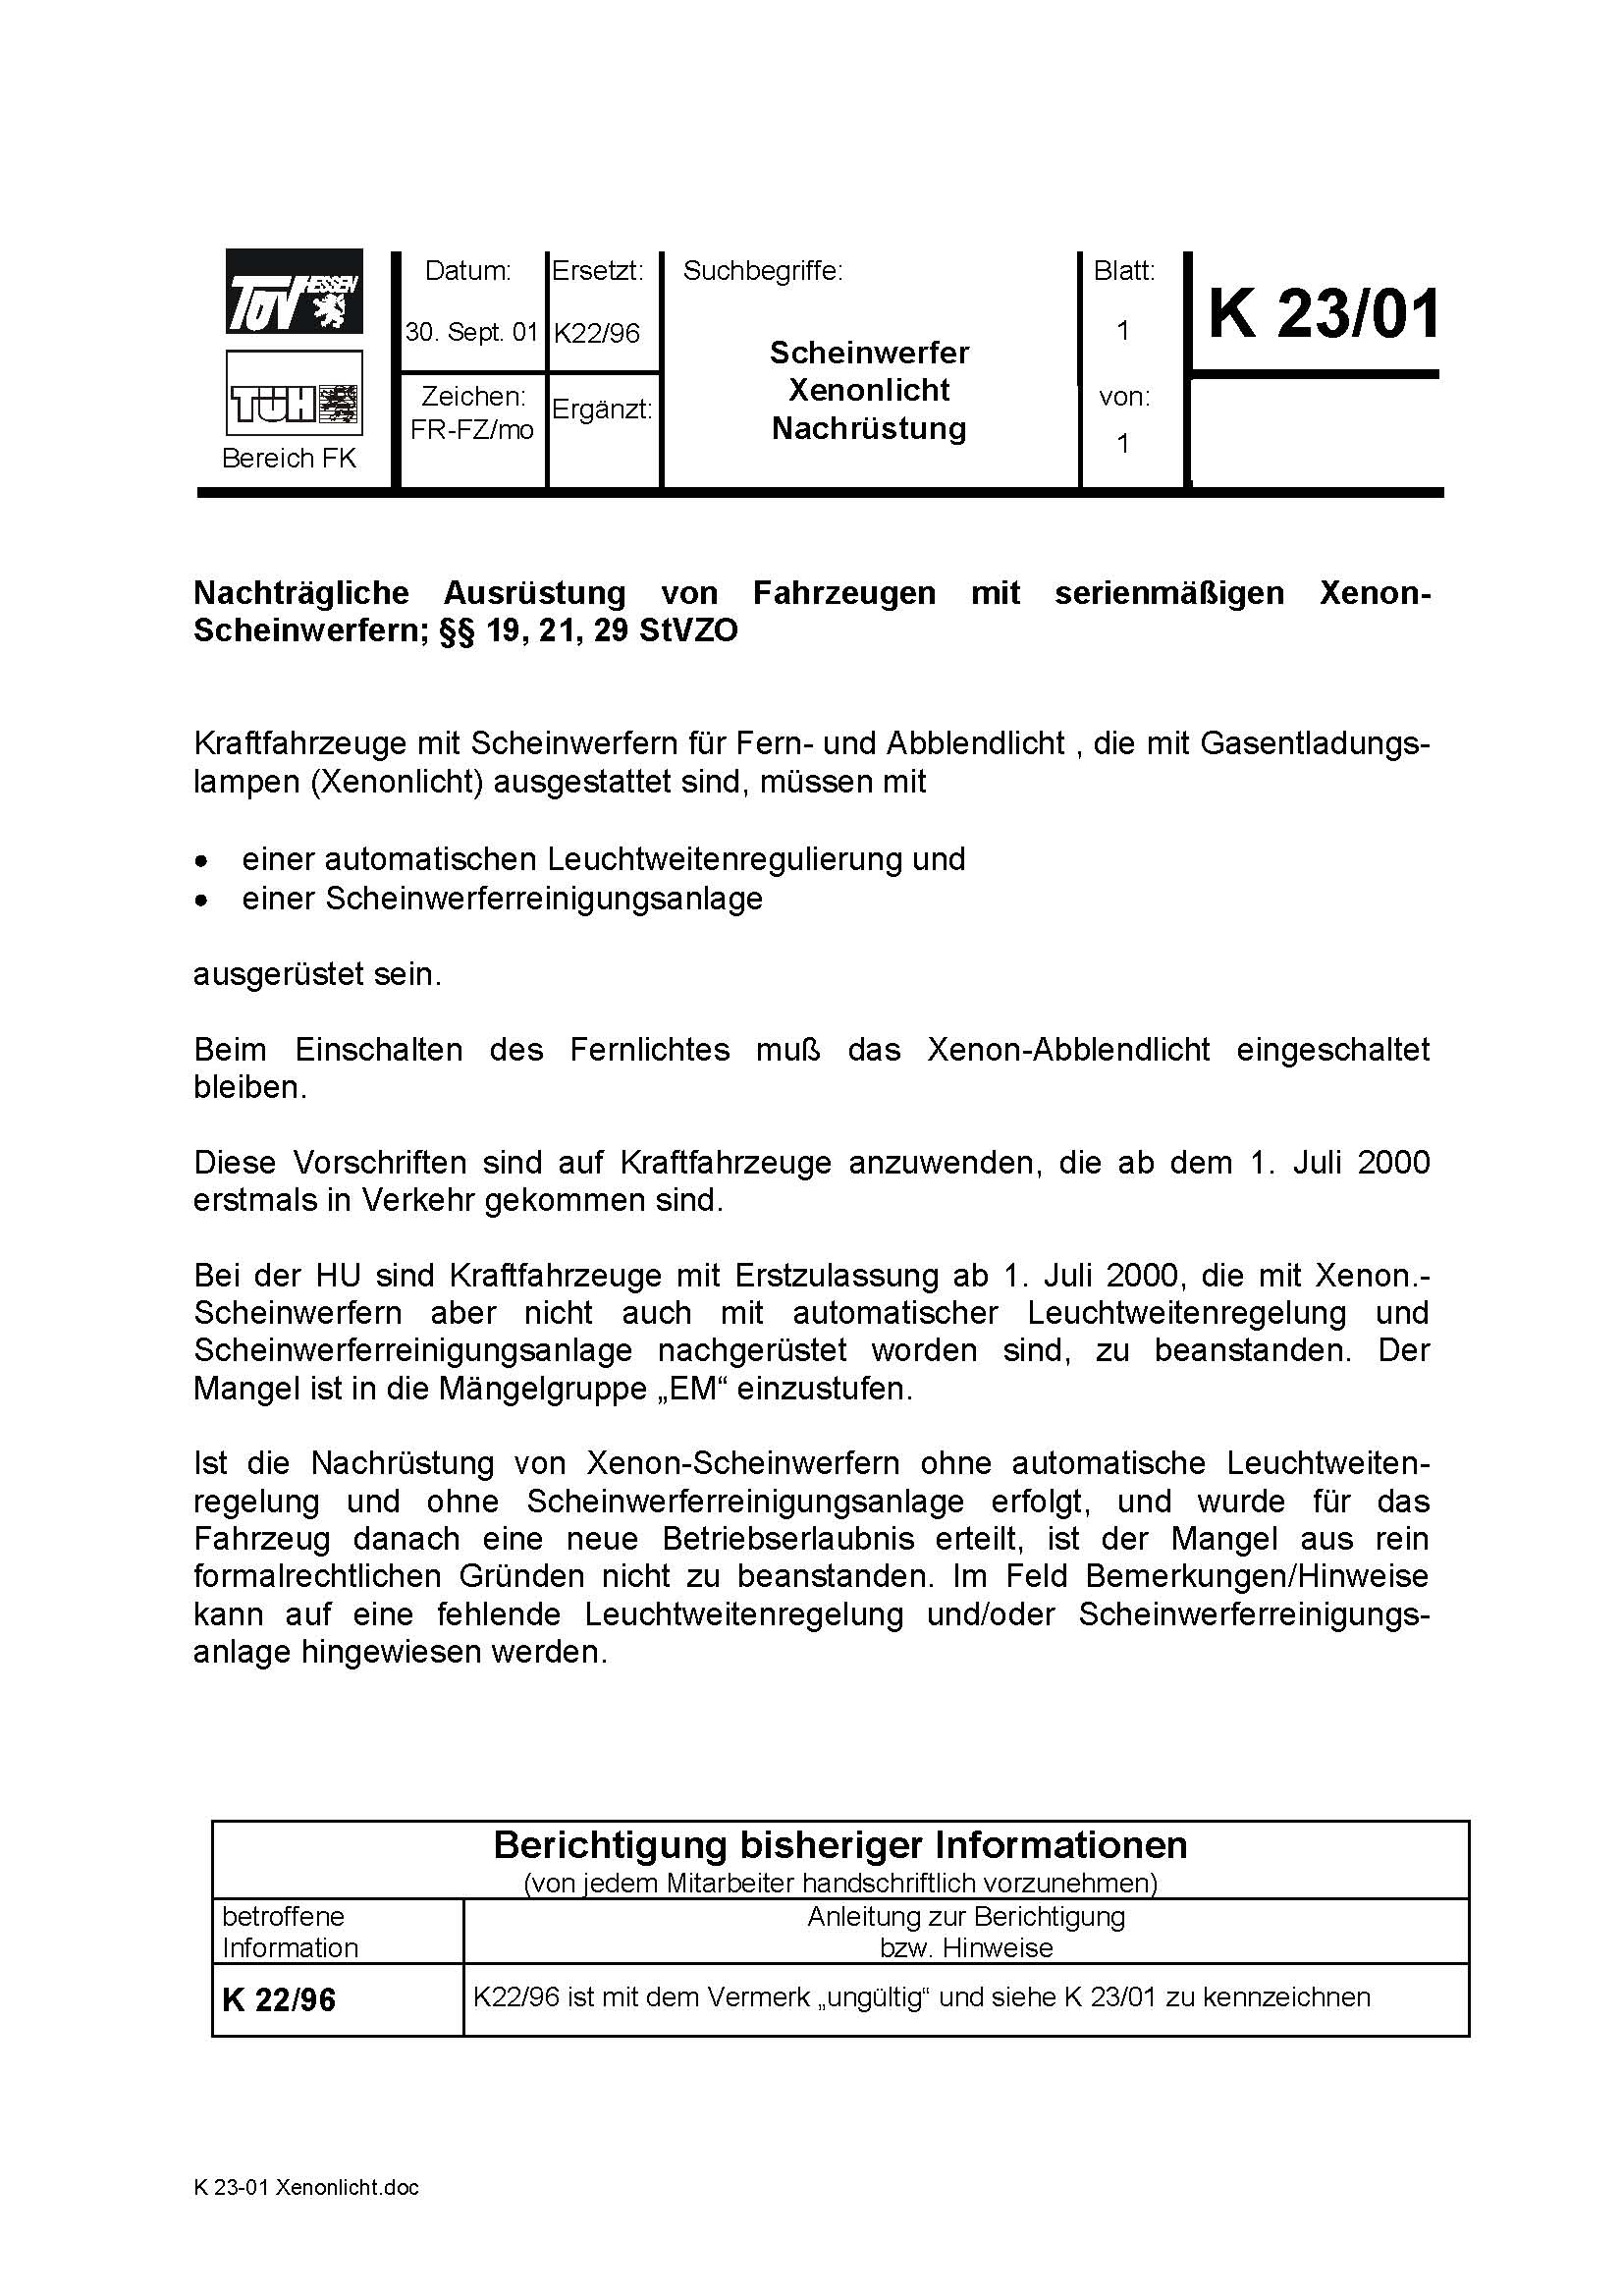 Anhang ID 1794 - xenongutachten_k2301.jpg